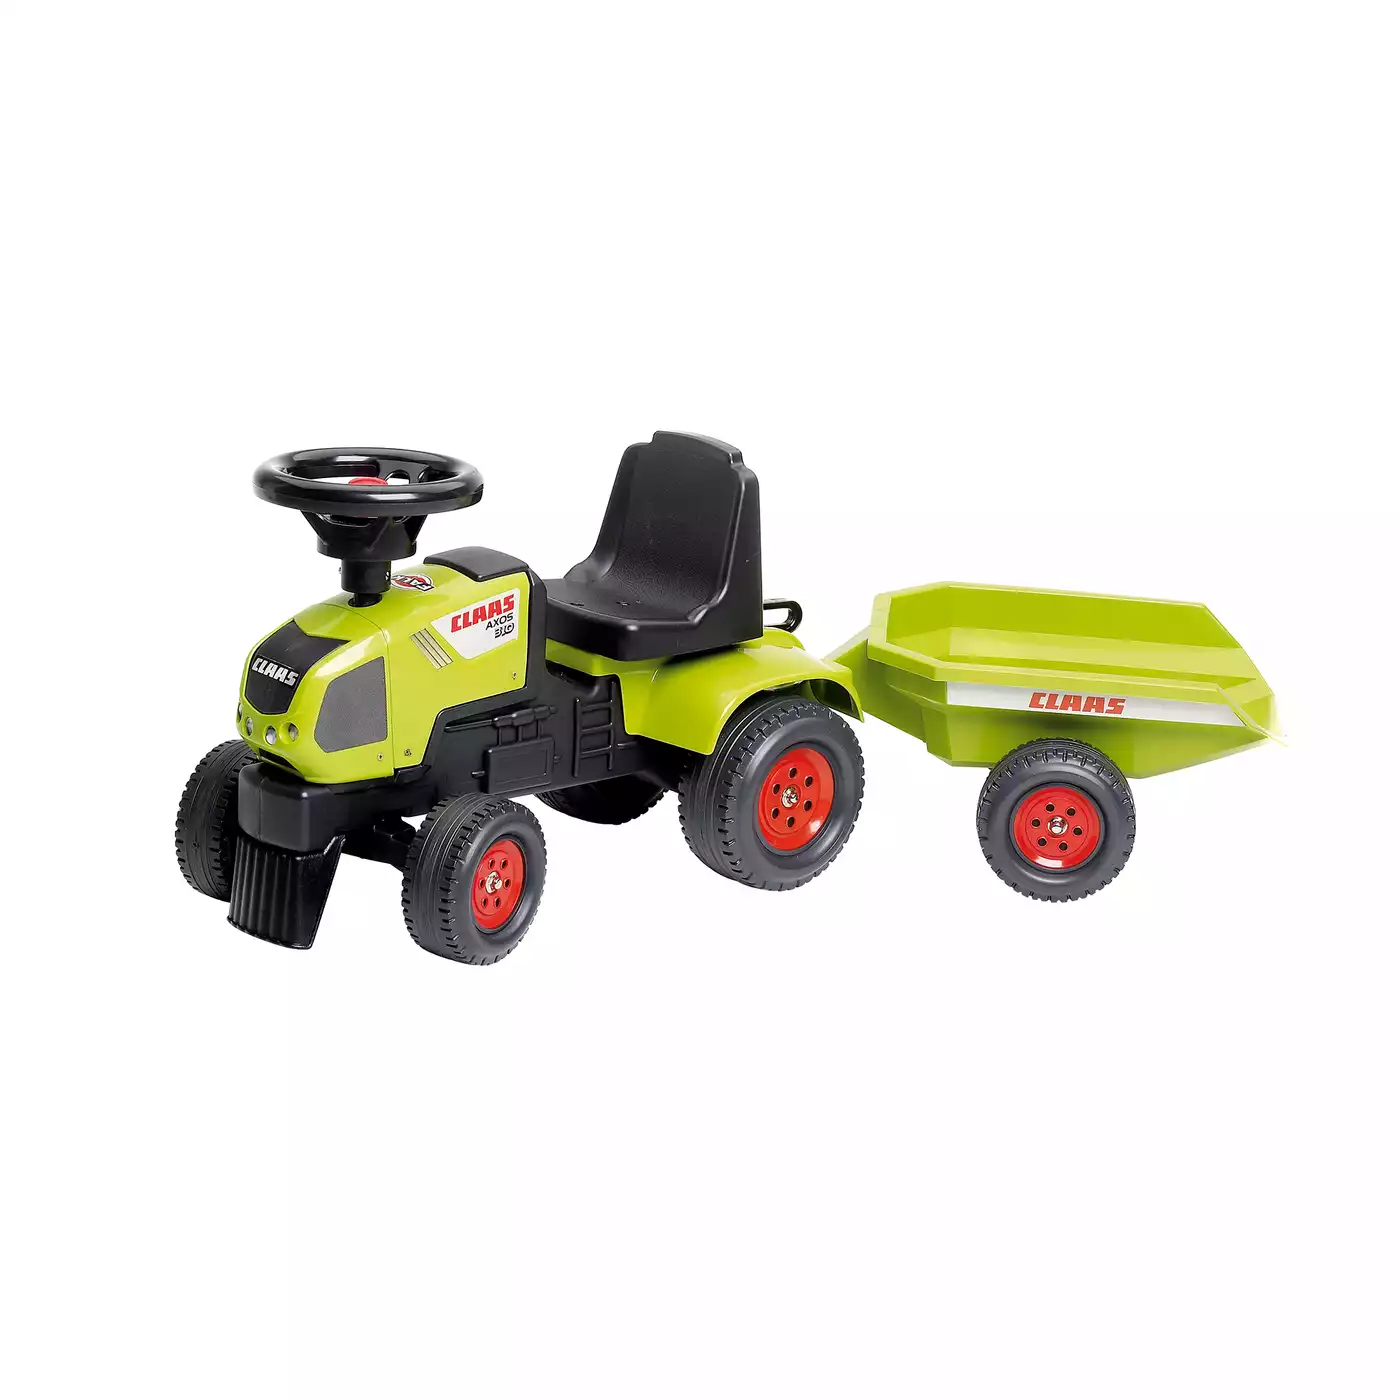 Claas Traktorrutscher Spielzeugring 2000572582902 3